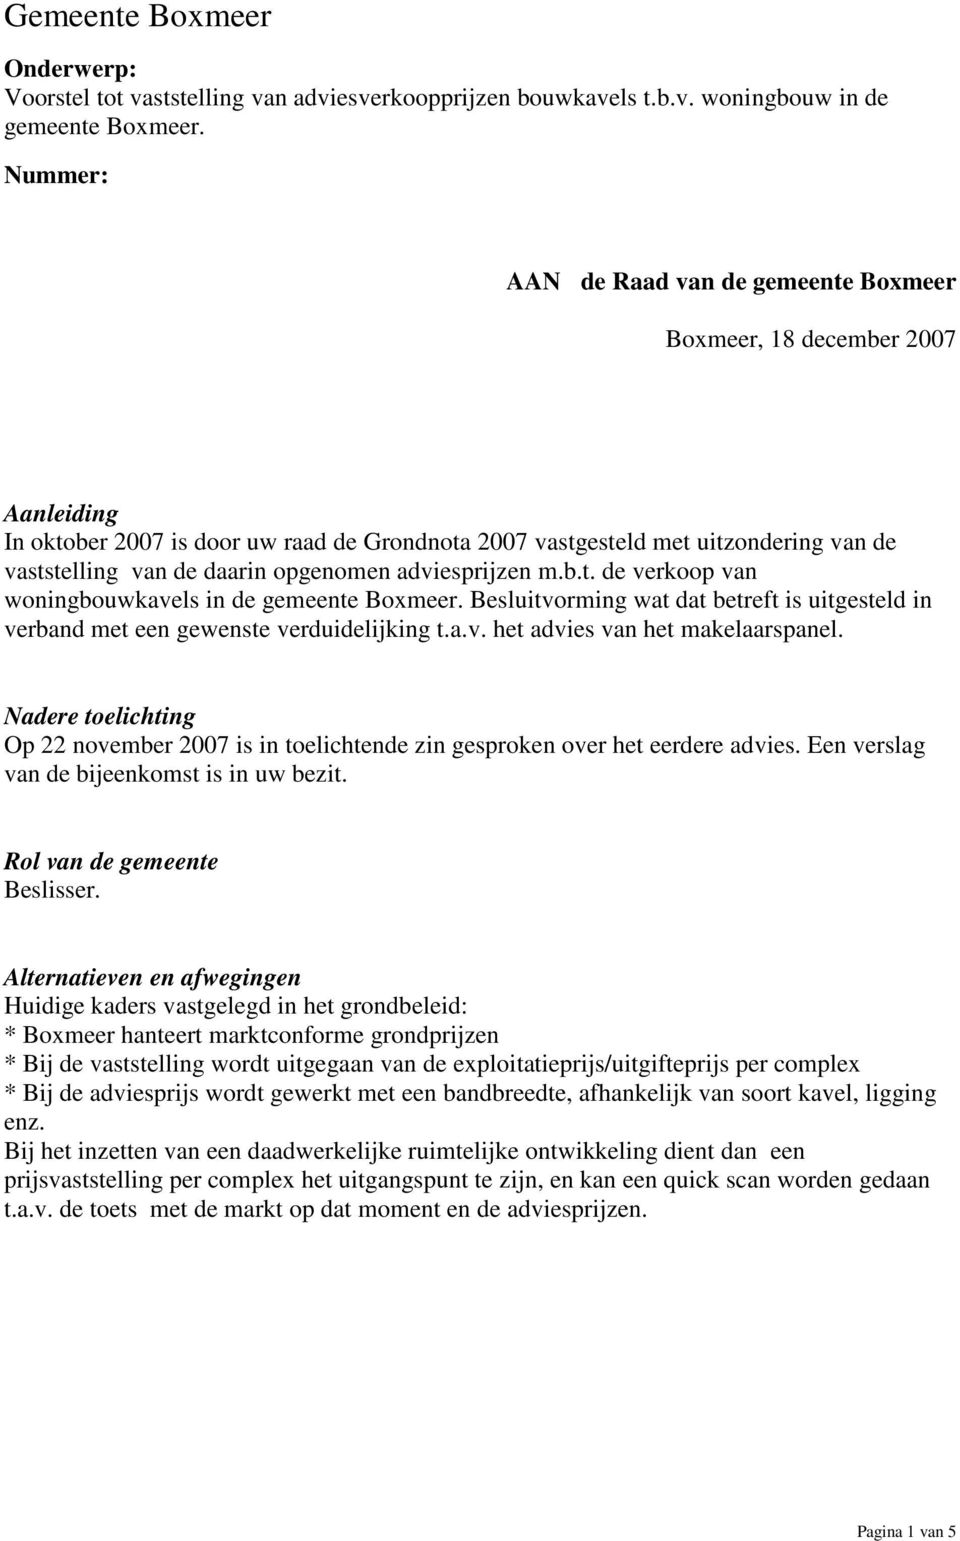 opgenomen adviesprijzen m.b.t. de verkoop van woningbouwkavels in de gemeente Boxmeer. Besluitvorming wat dat betreft is uitgesteld in verband met een gewenste verduidelijking t.a.v. het advies van het makelaarspanel.